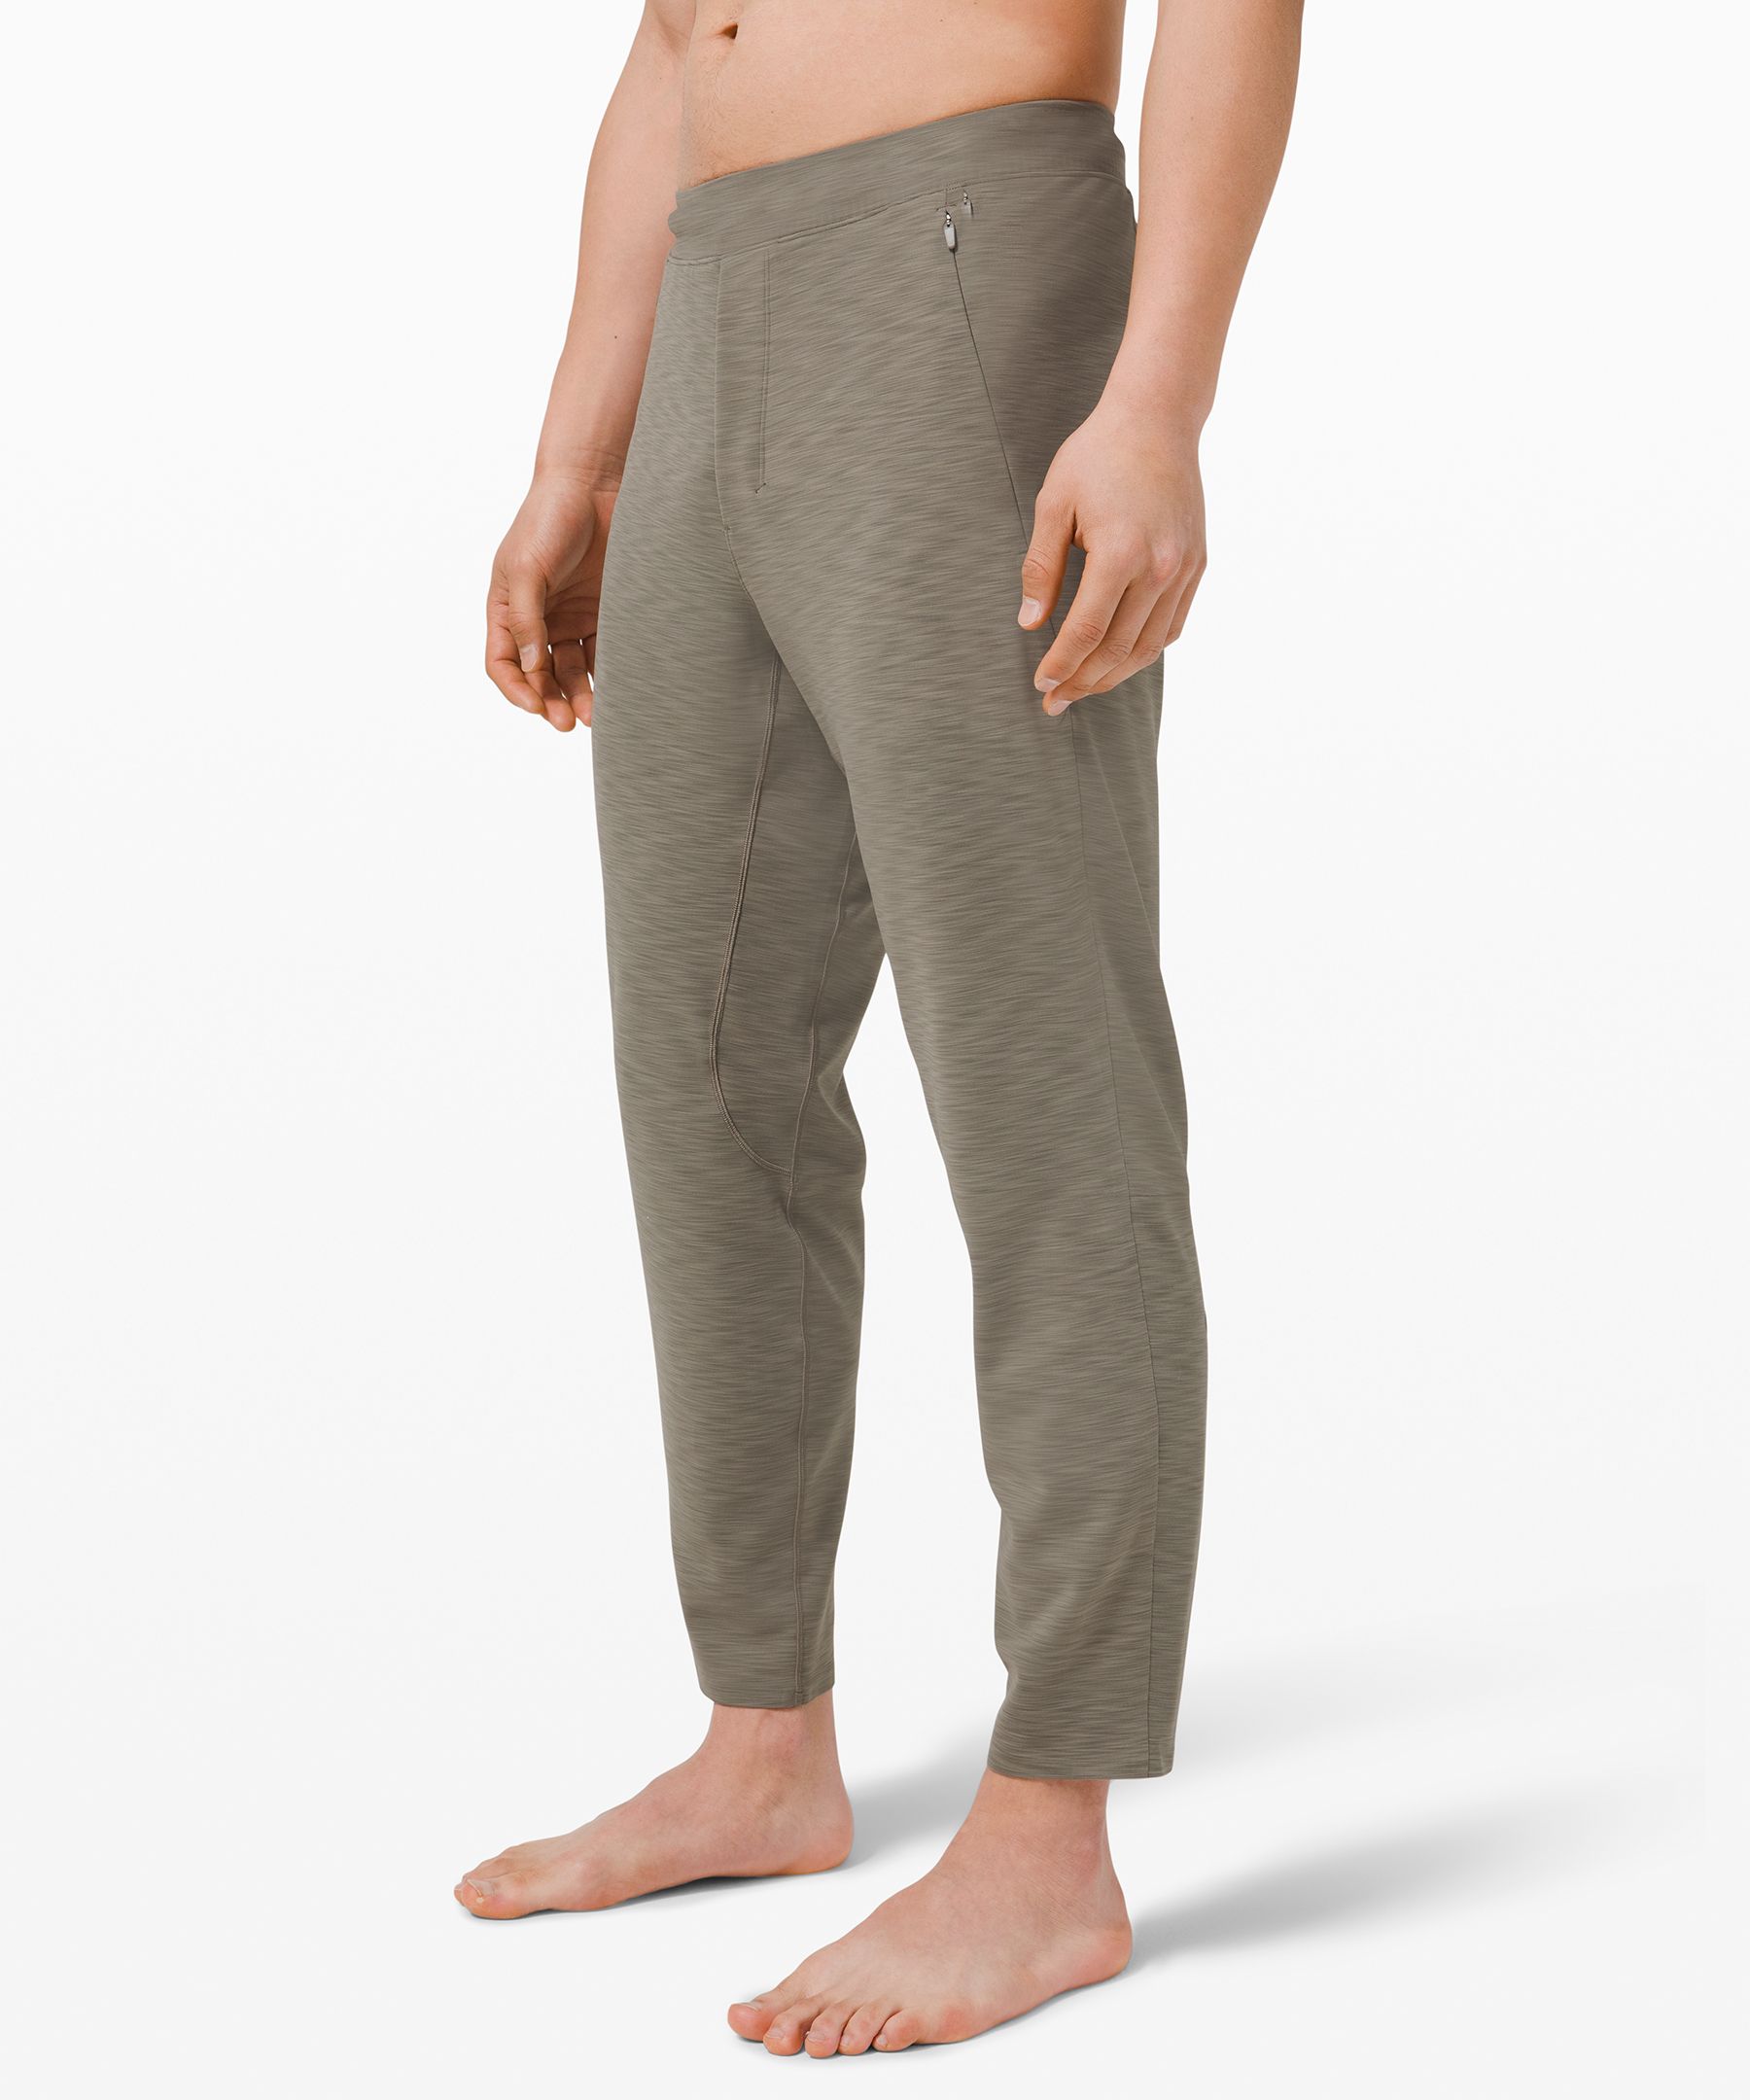 lululemon pajama pants